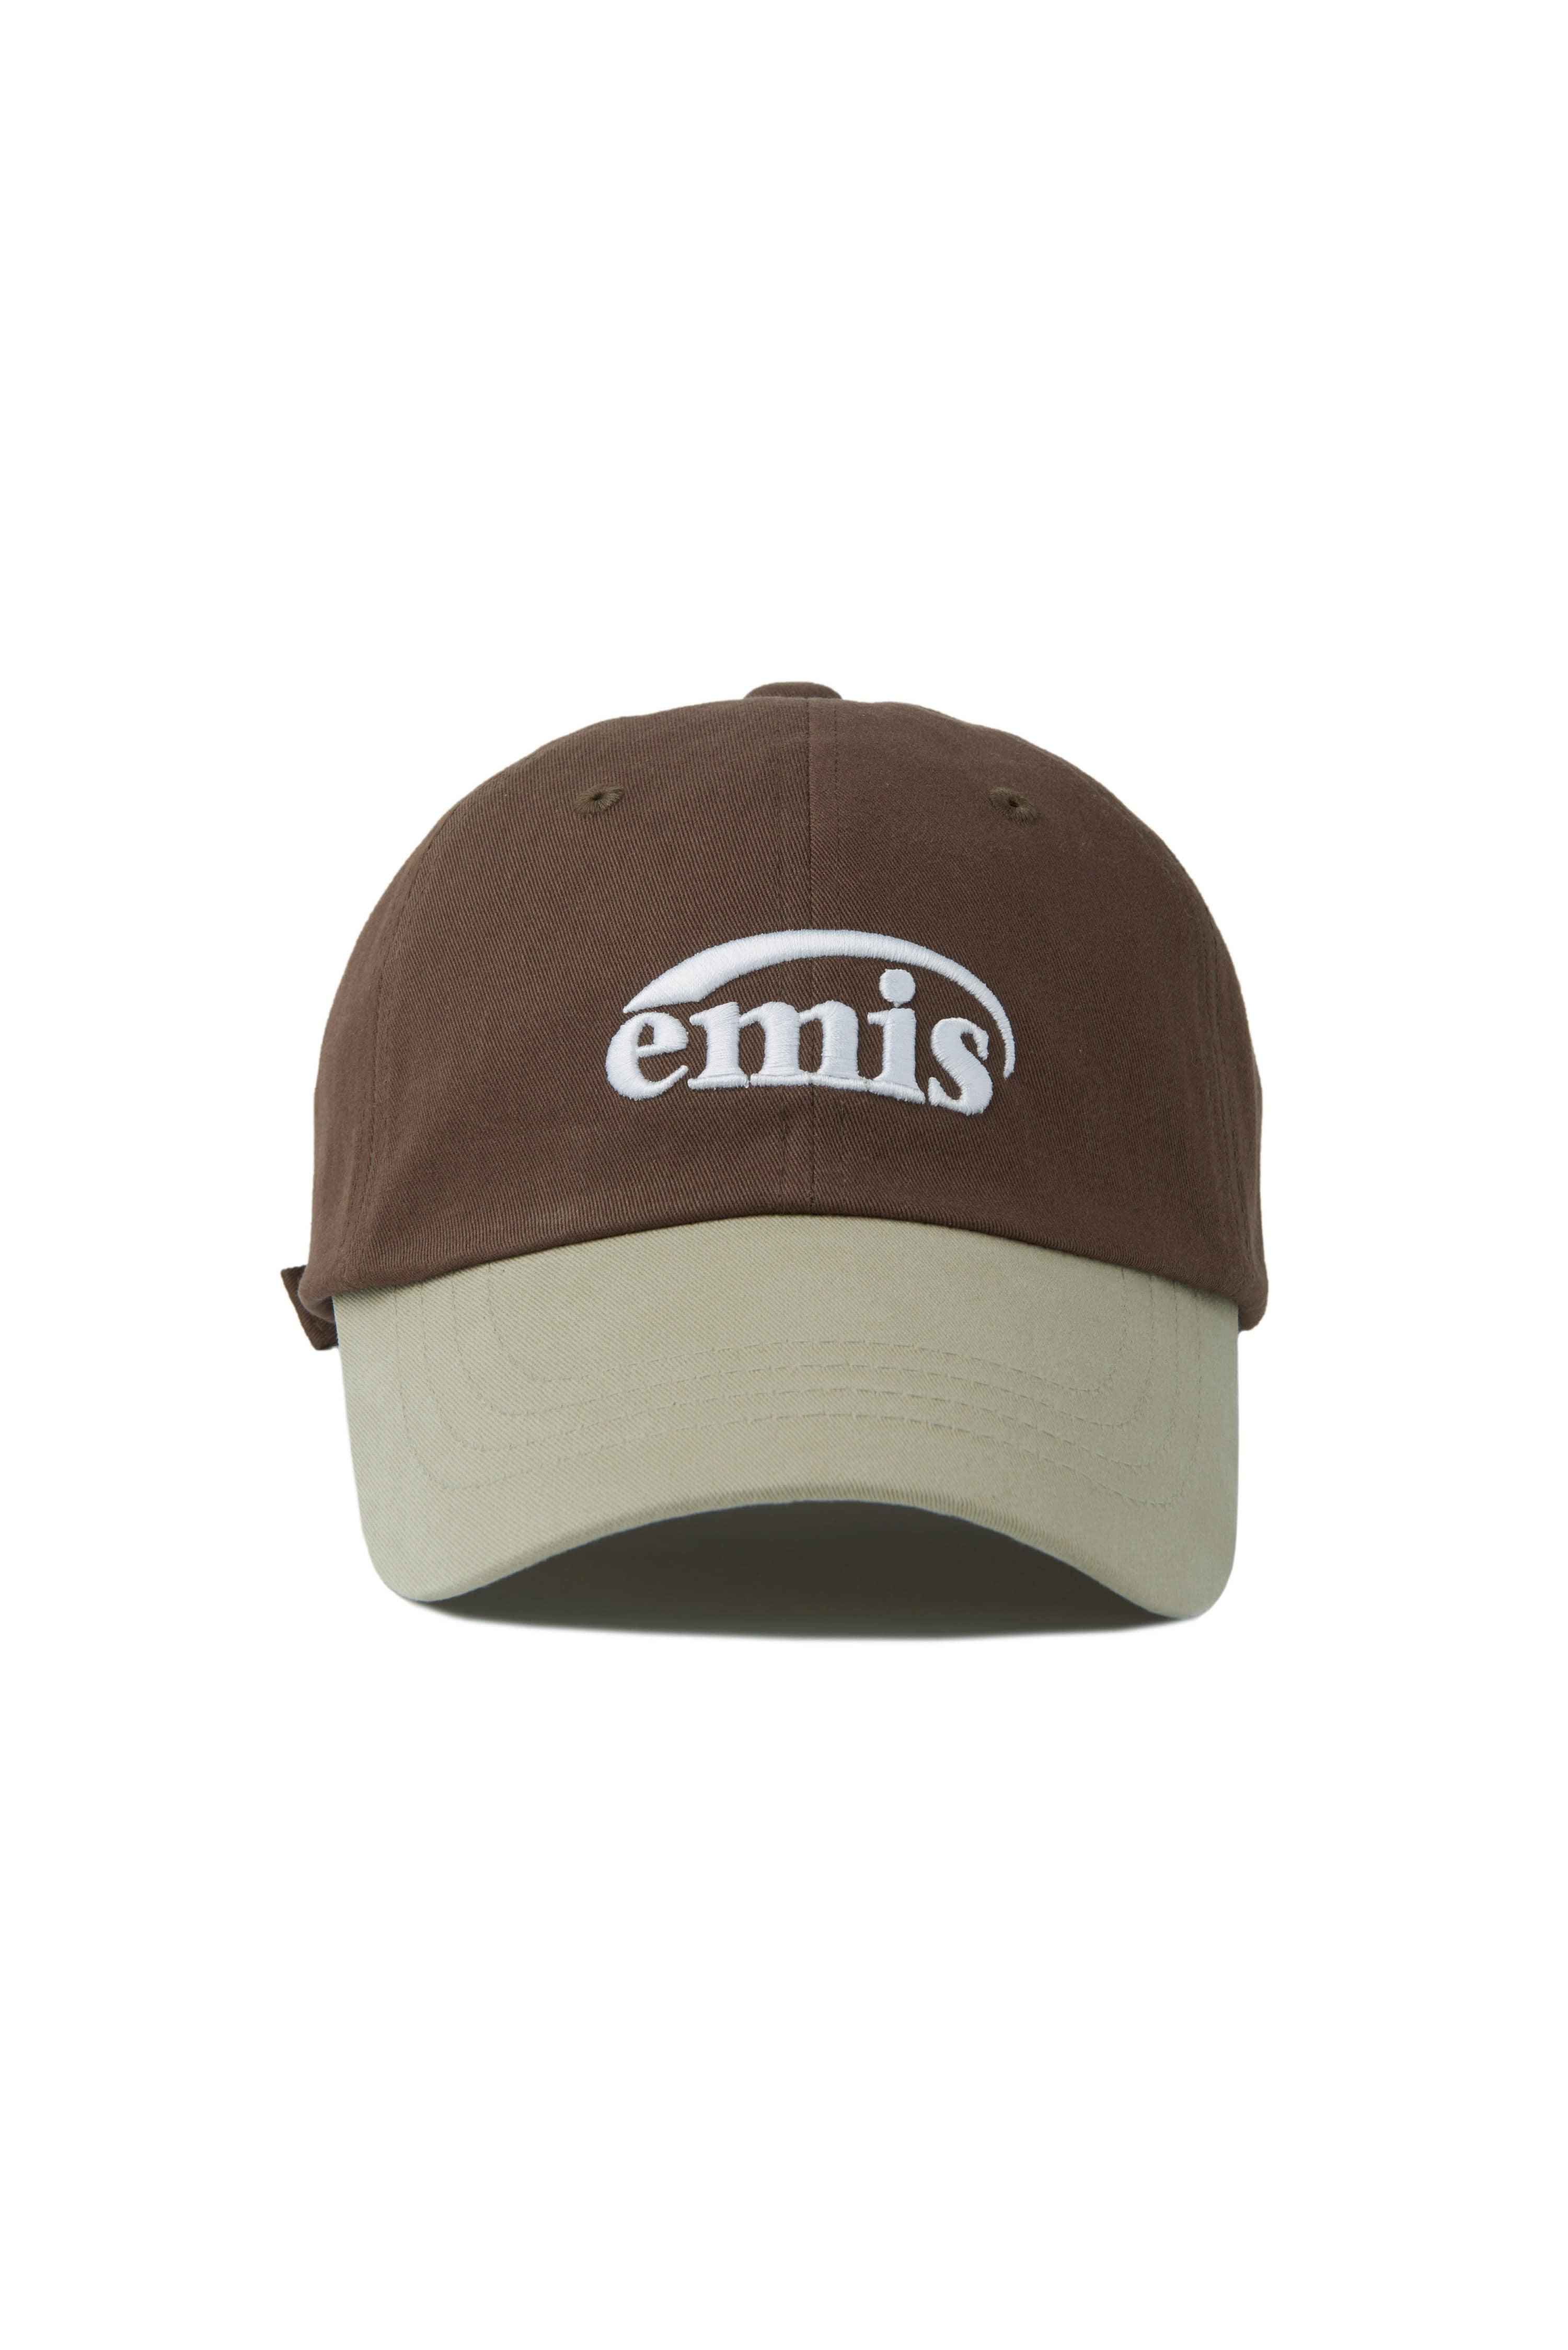 ❗🇰🇷韓國正版❗ emis 帽子 EMIS字母刺繡 MIX 拼接色 休閒可調節棒球帽 （7色可選）